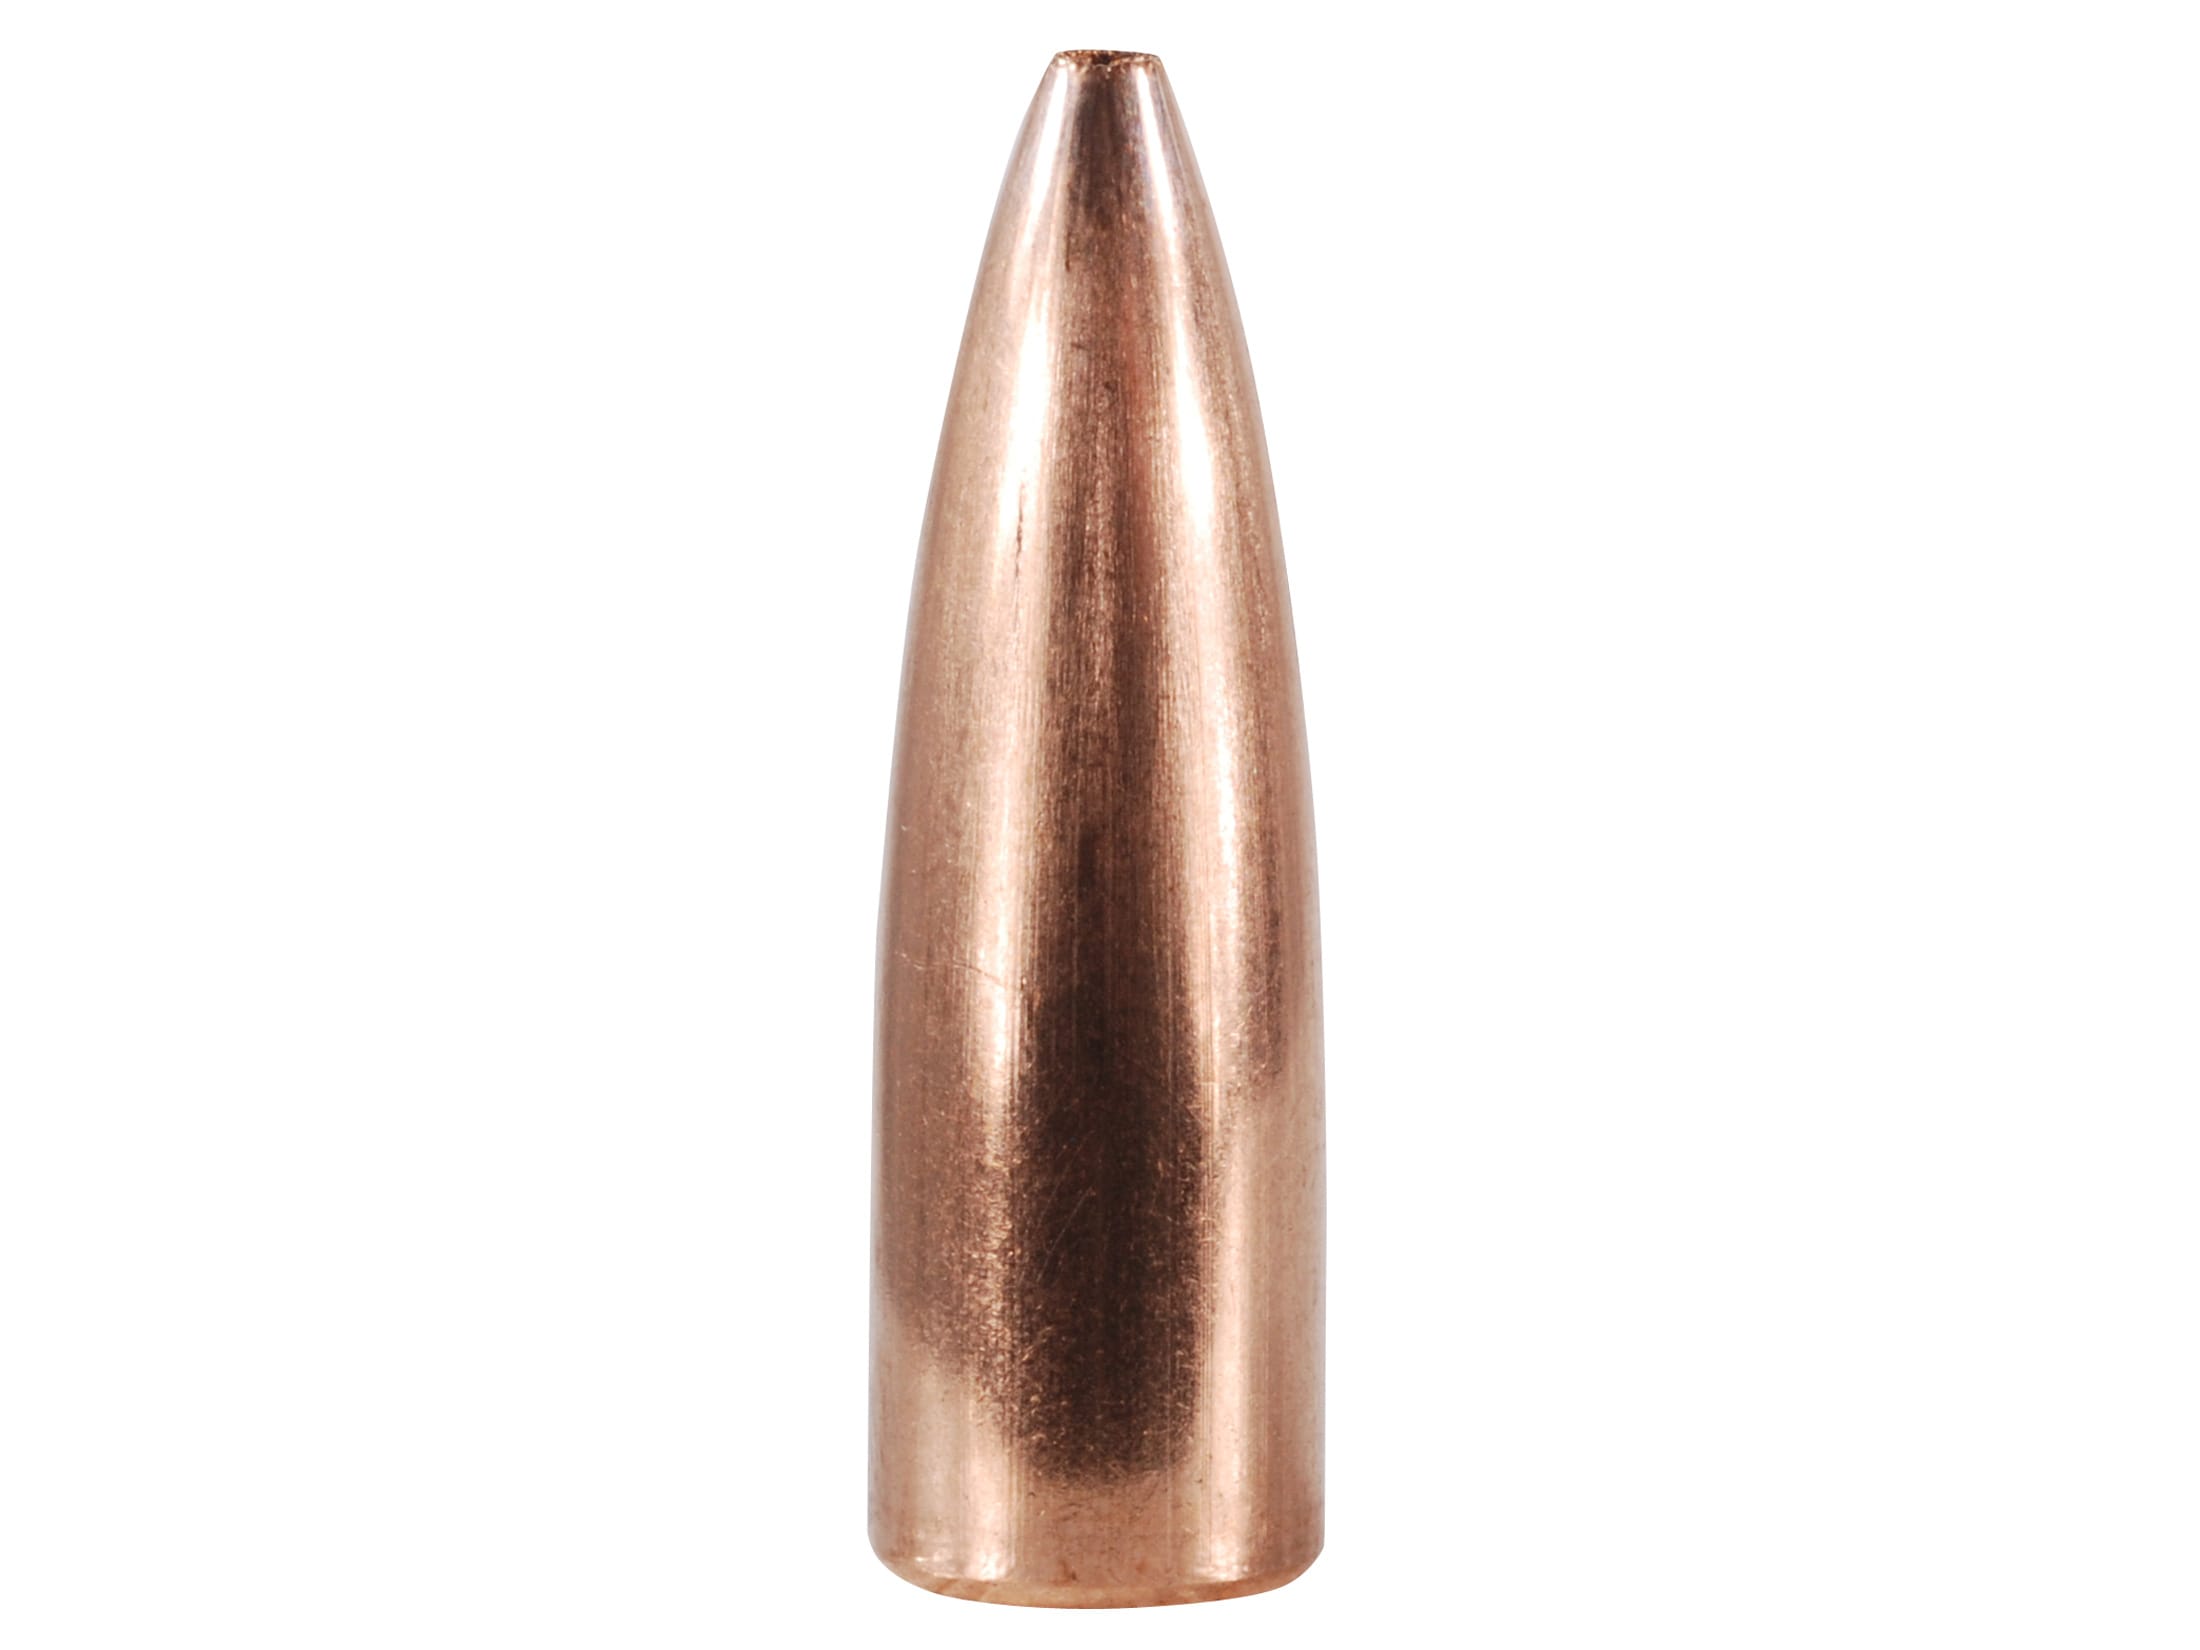 Berger Target Bullets 243 Caliber, 6mm (243 Diameter) BR Column 64 Grain Hollow Point Flat Base